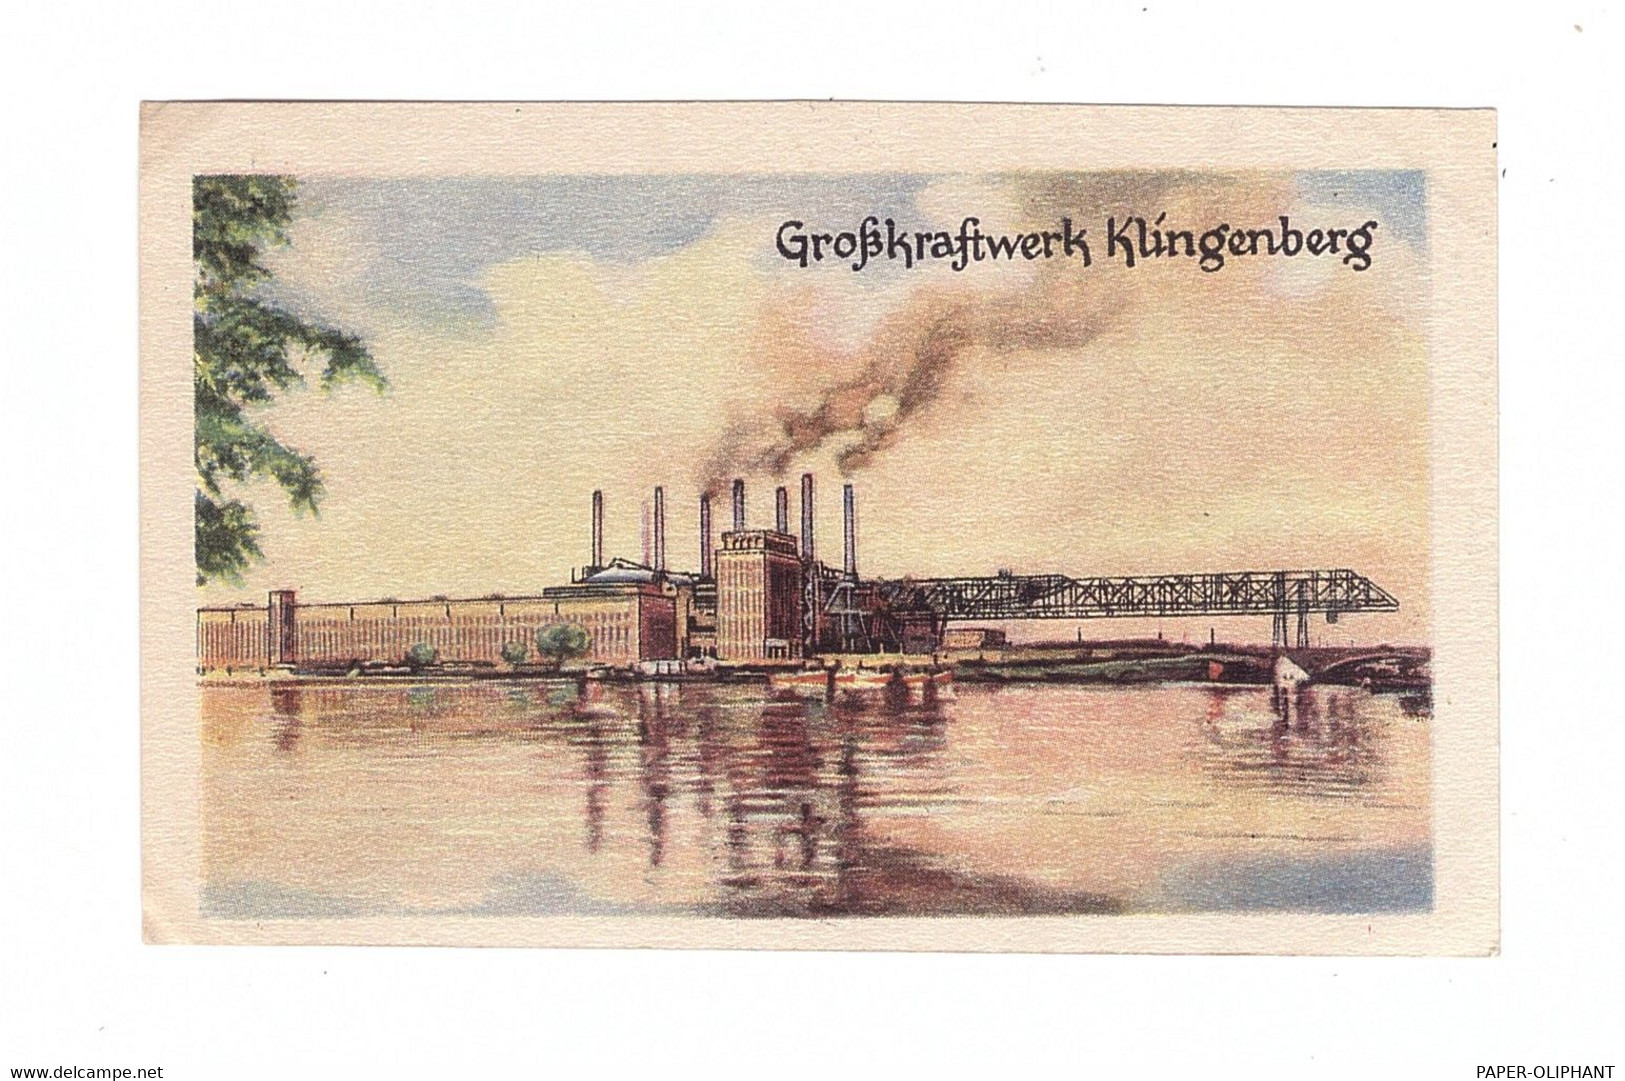 1000 BERLIN - RUMMELSBURG, Großkraftwerk Klingenberg, Homann-Sammelbild - Hohenschoenhausen